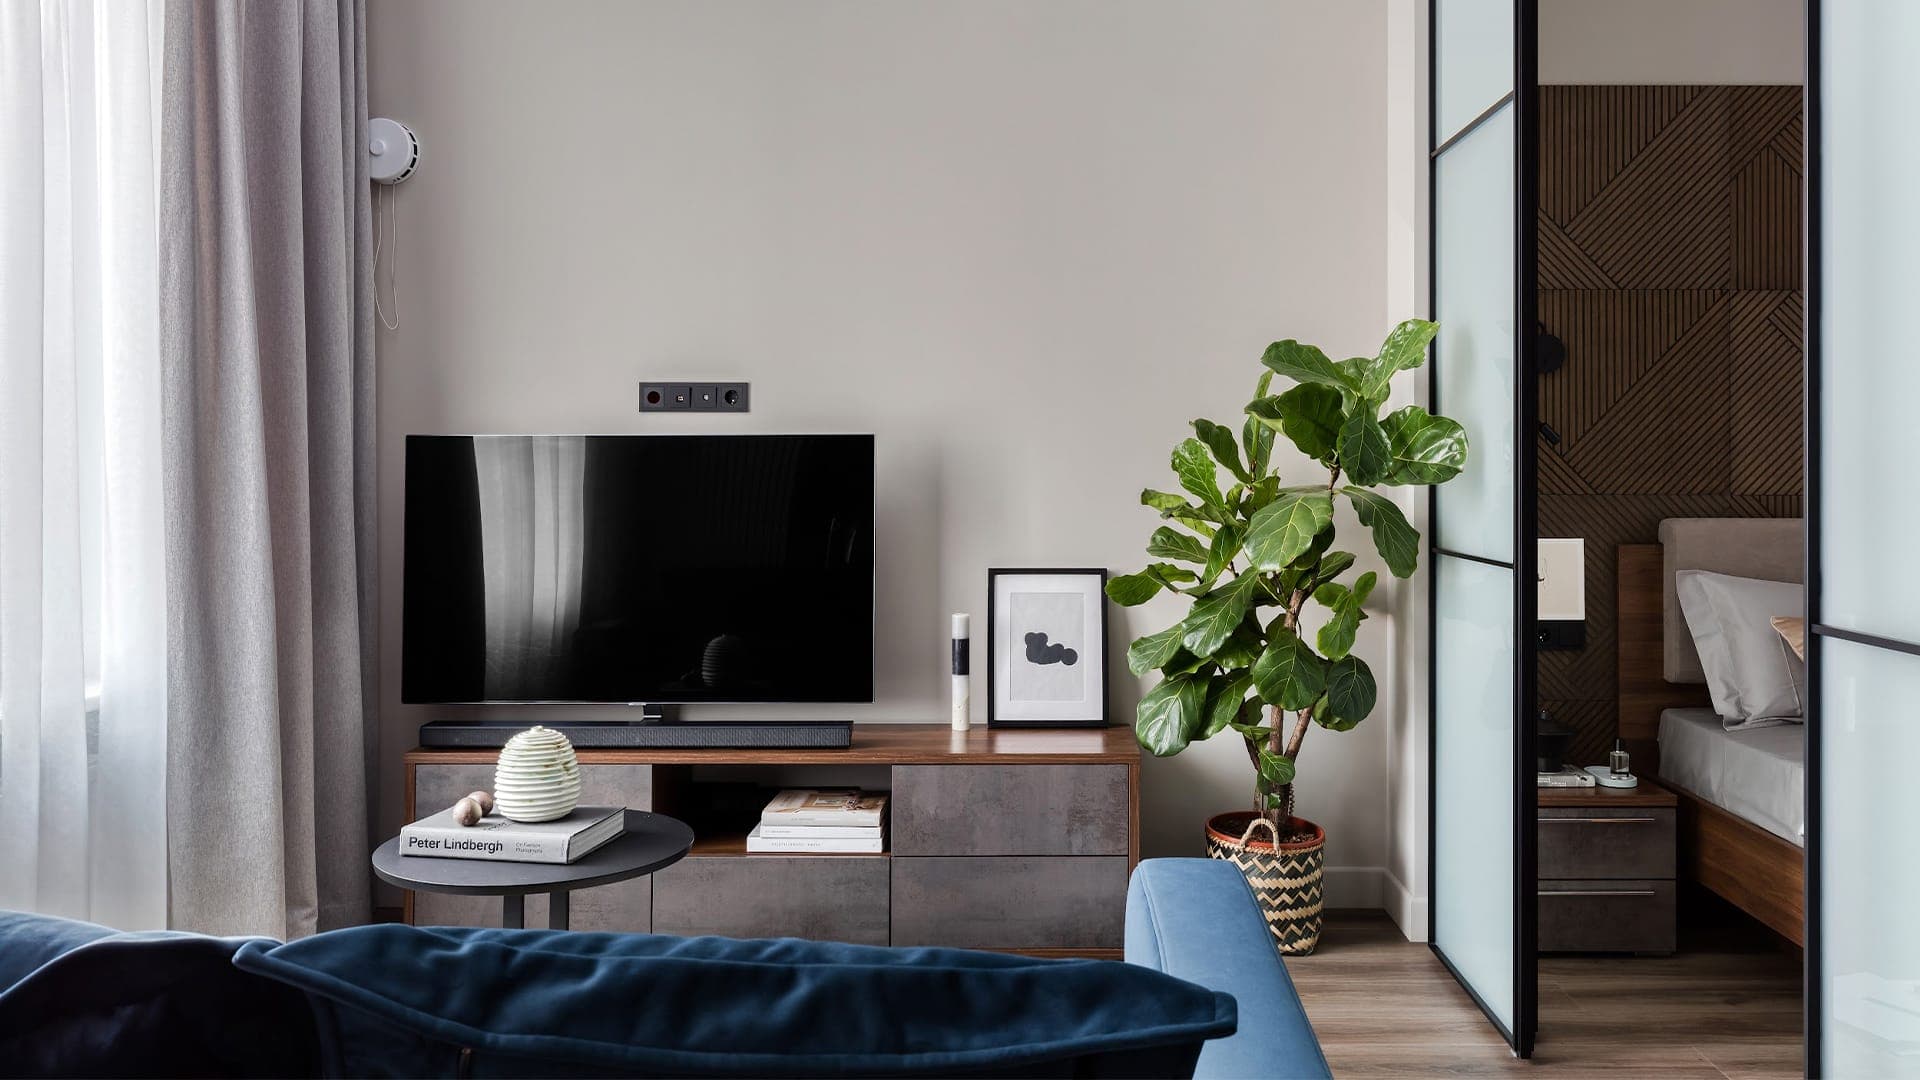 Необычная спальня и умное зонирование в интерьере стильной квартиры ― проект Black Wall Interior Design Studio